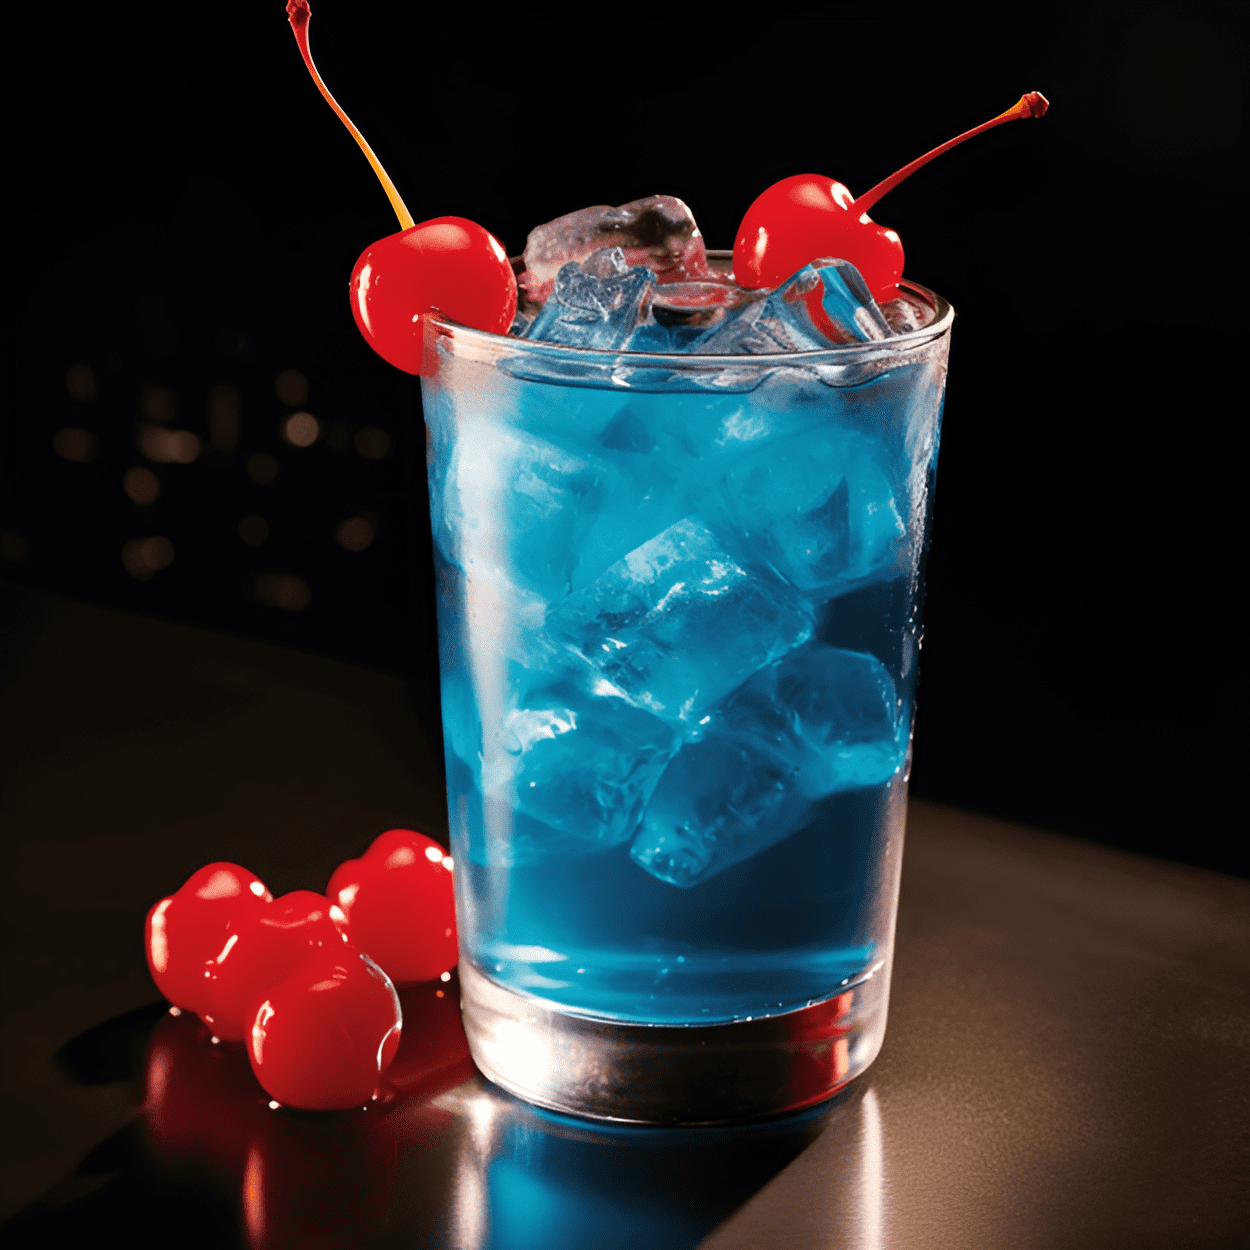 Super Man Cóctel Receta - El cóctel Super Man es una bebida dulce y afrutada con un color azul vibrante. Tiene un fuerte sabor a piña y coco, con un toque de cítricos. El sabor es suave y refrescante, con un ligero toque del vodka.